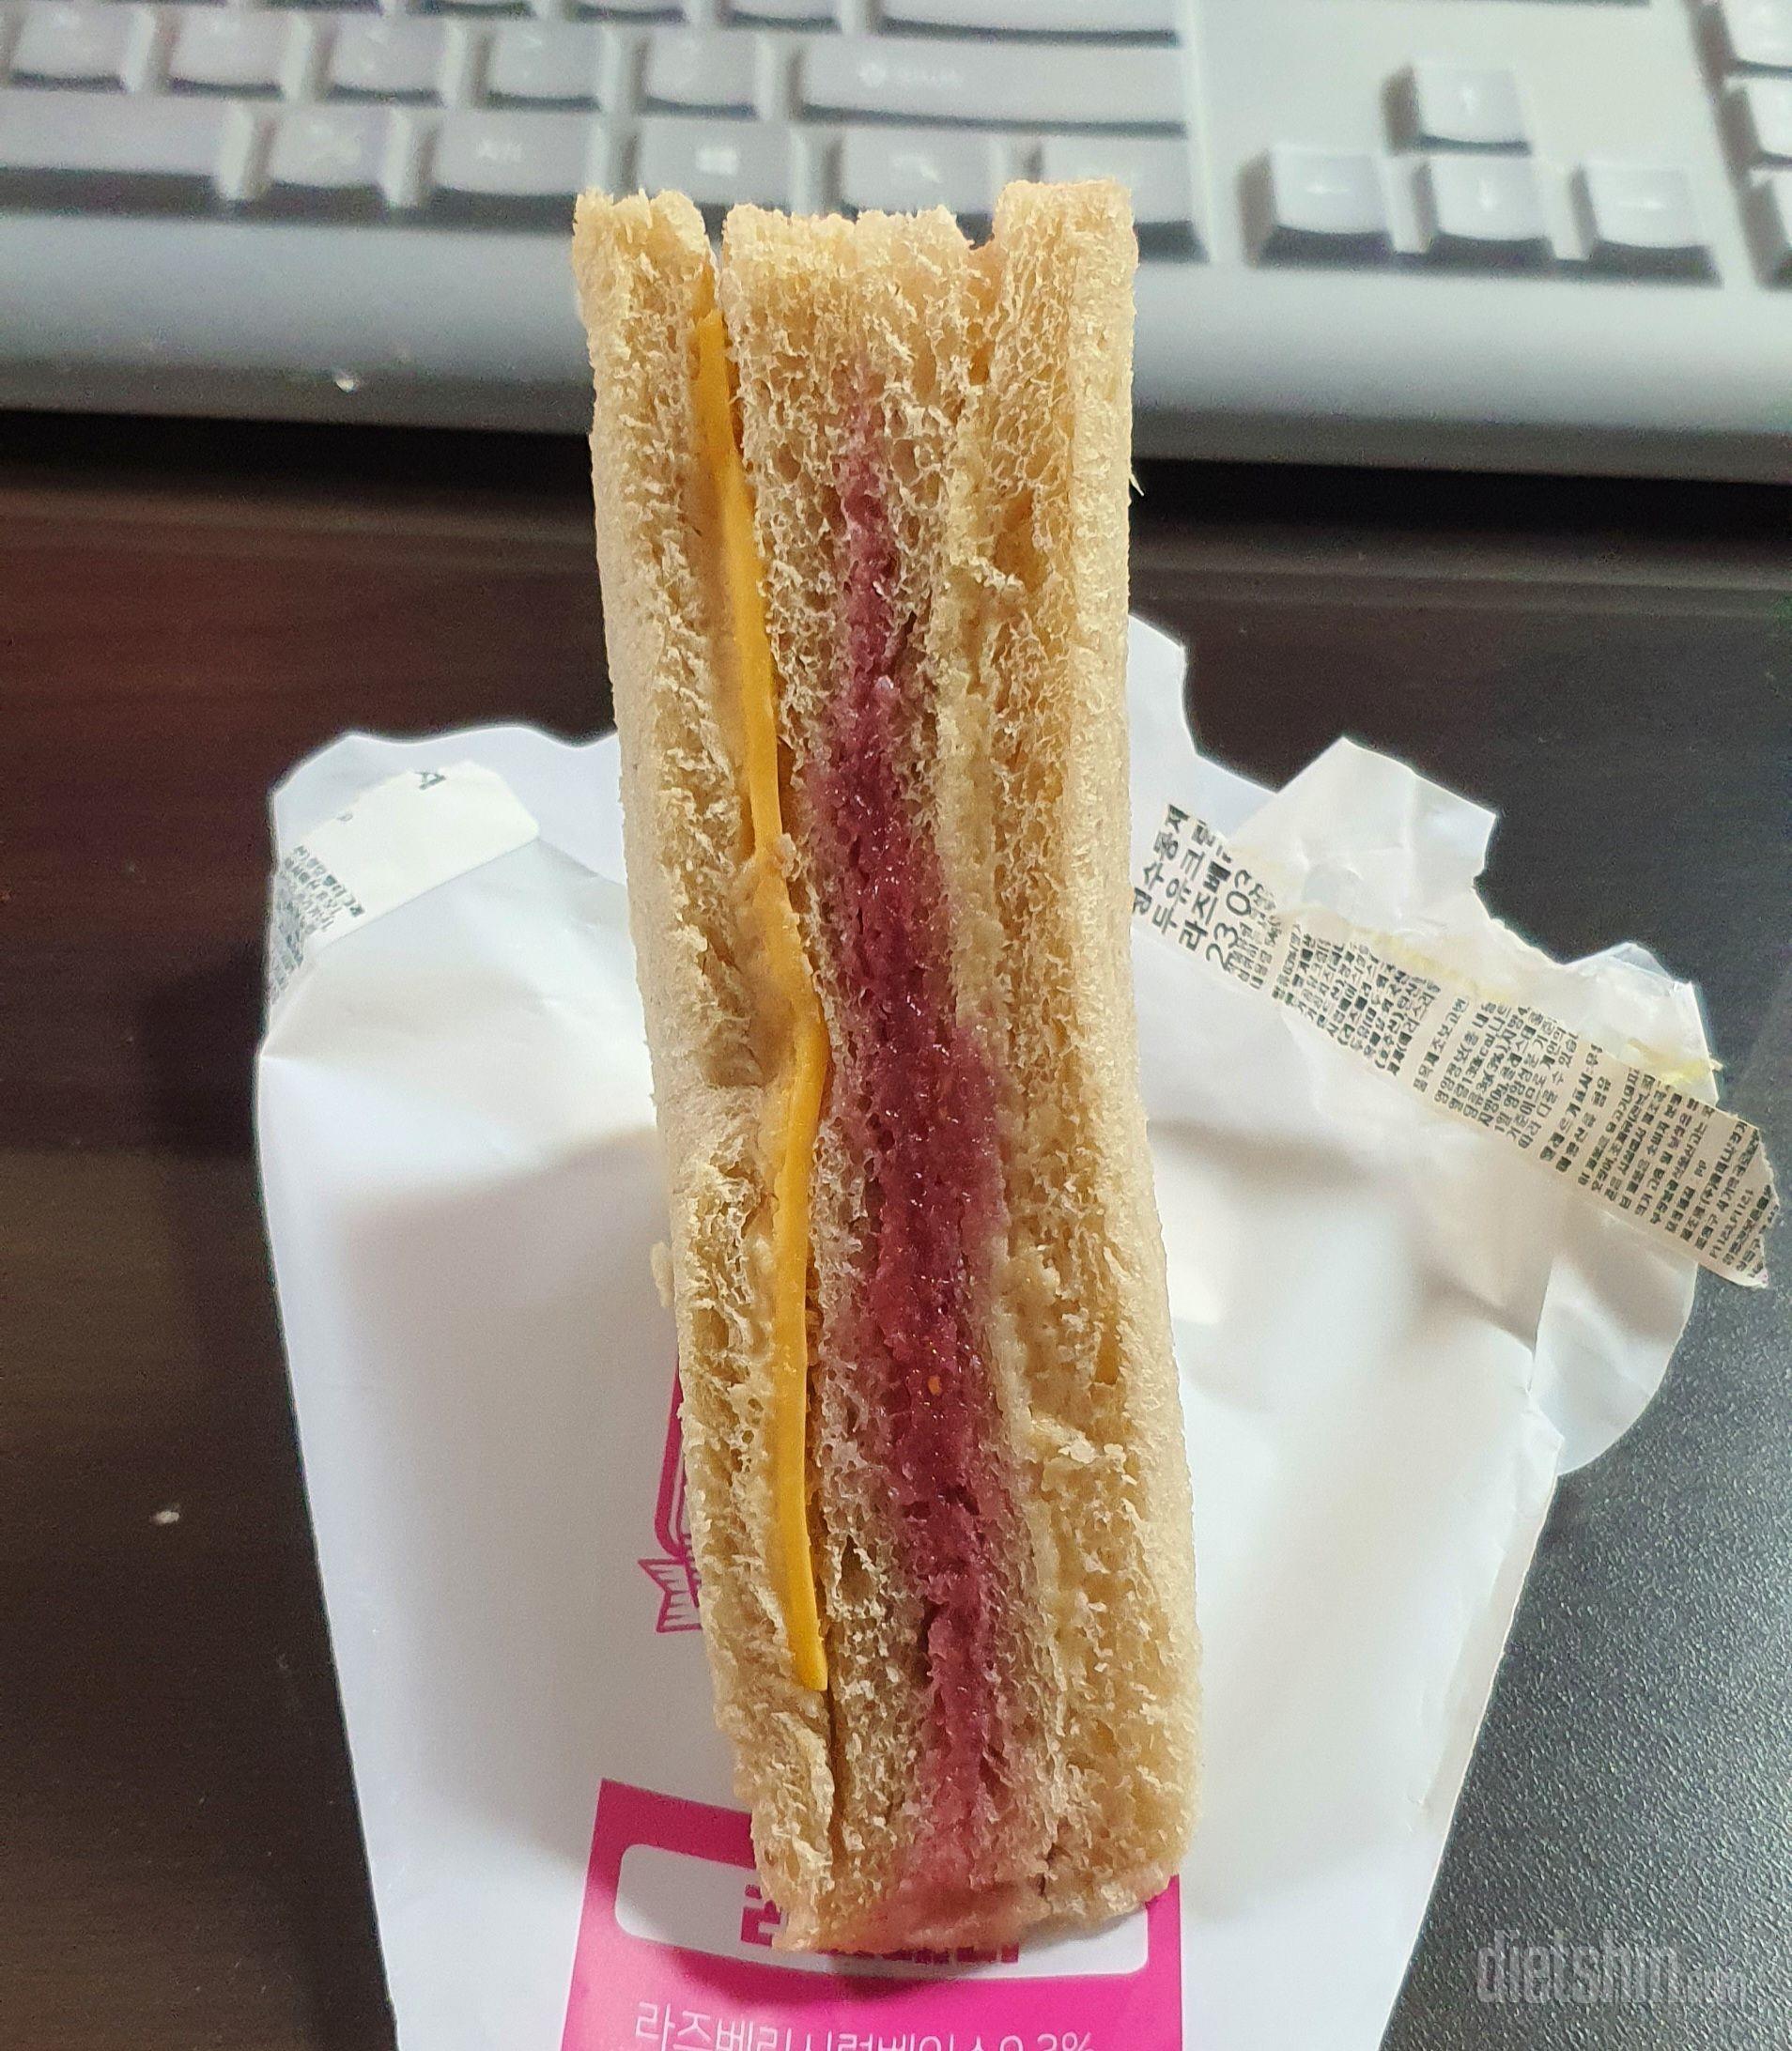 크기: 비슷한 가격대 편의점 샌드위치